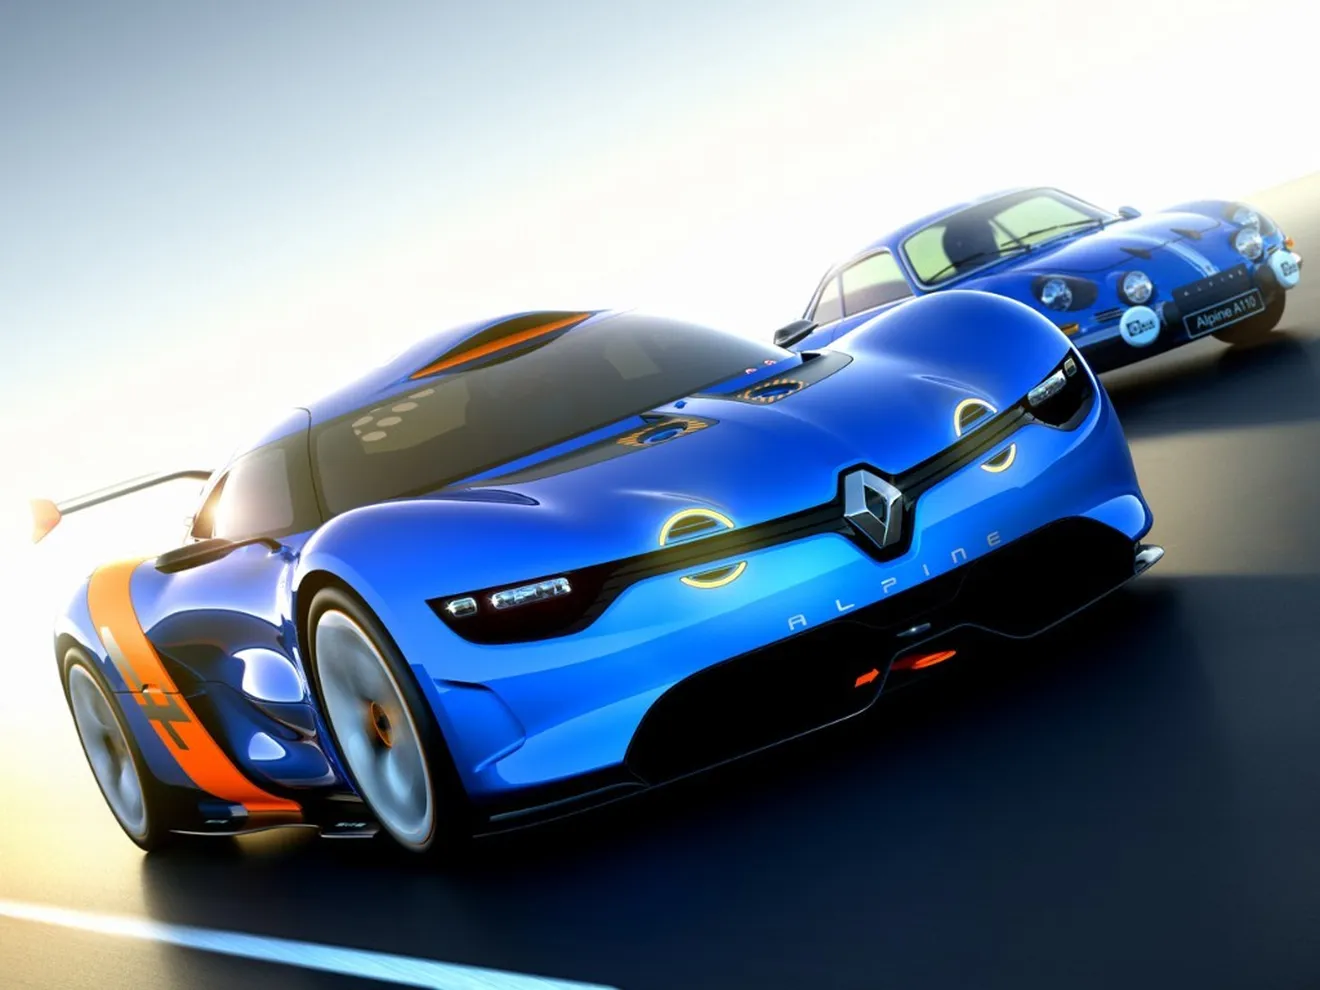 Alpine presentará un nuevo prototipo en Le Mans 2015, previo a su producción